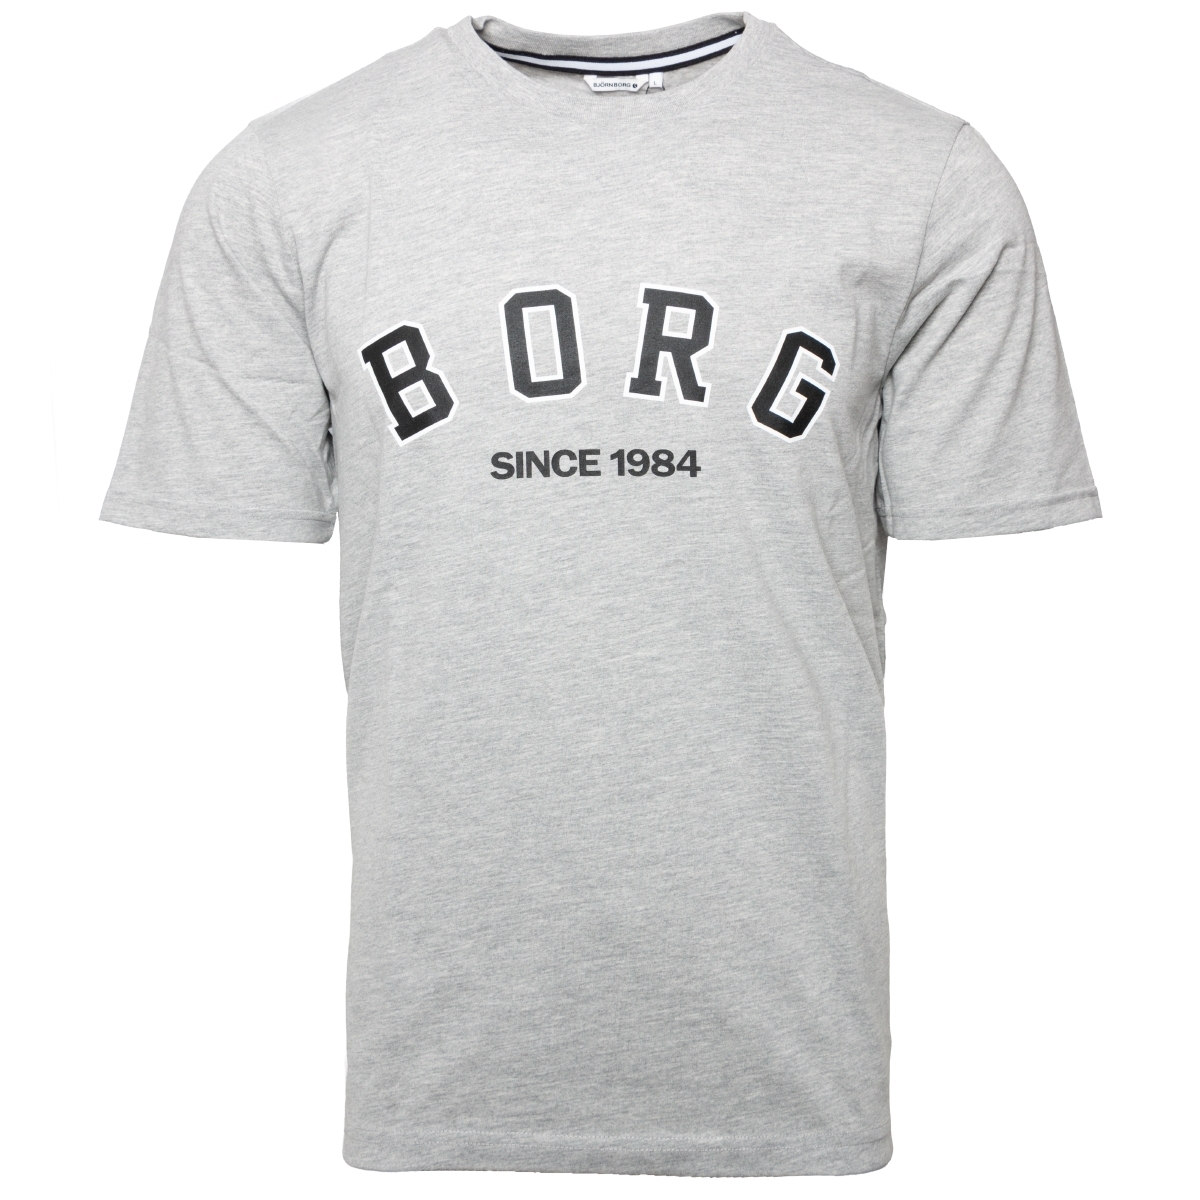 Björn Borg Tee T-Shirt